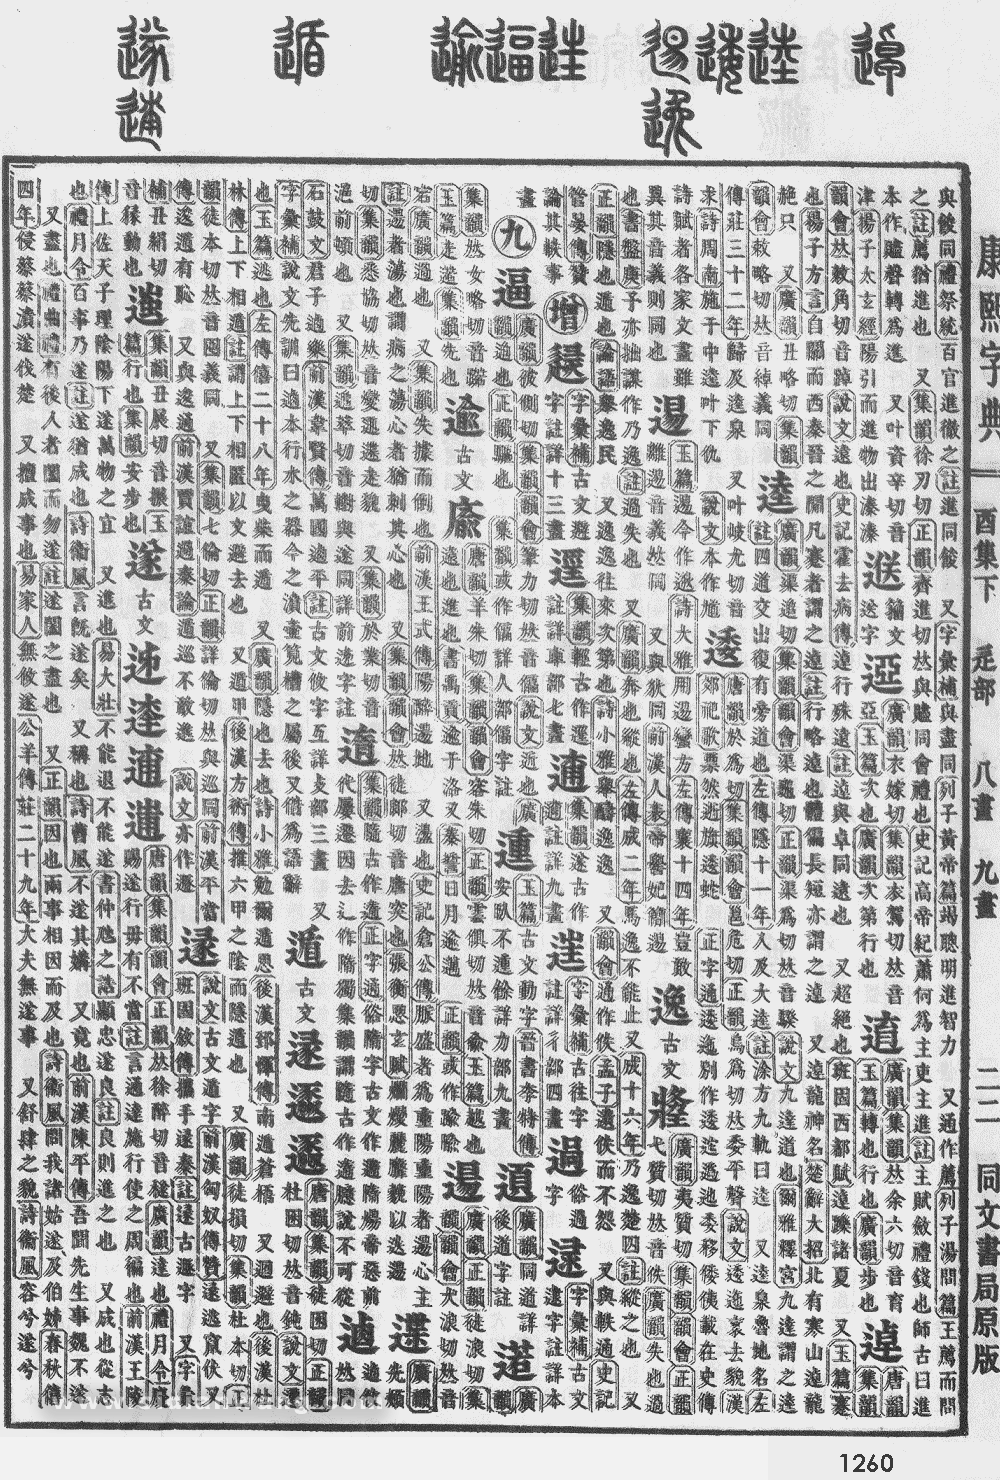 康熙字典掃描版第1260頁